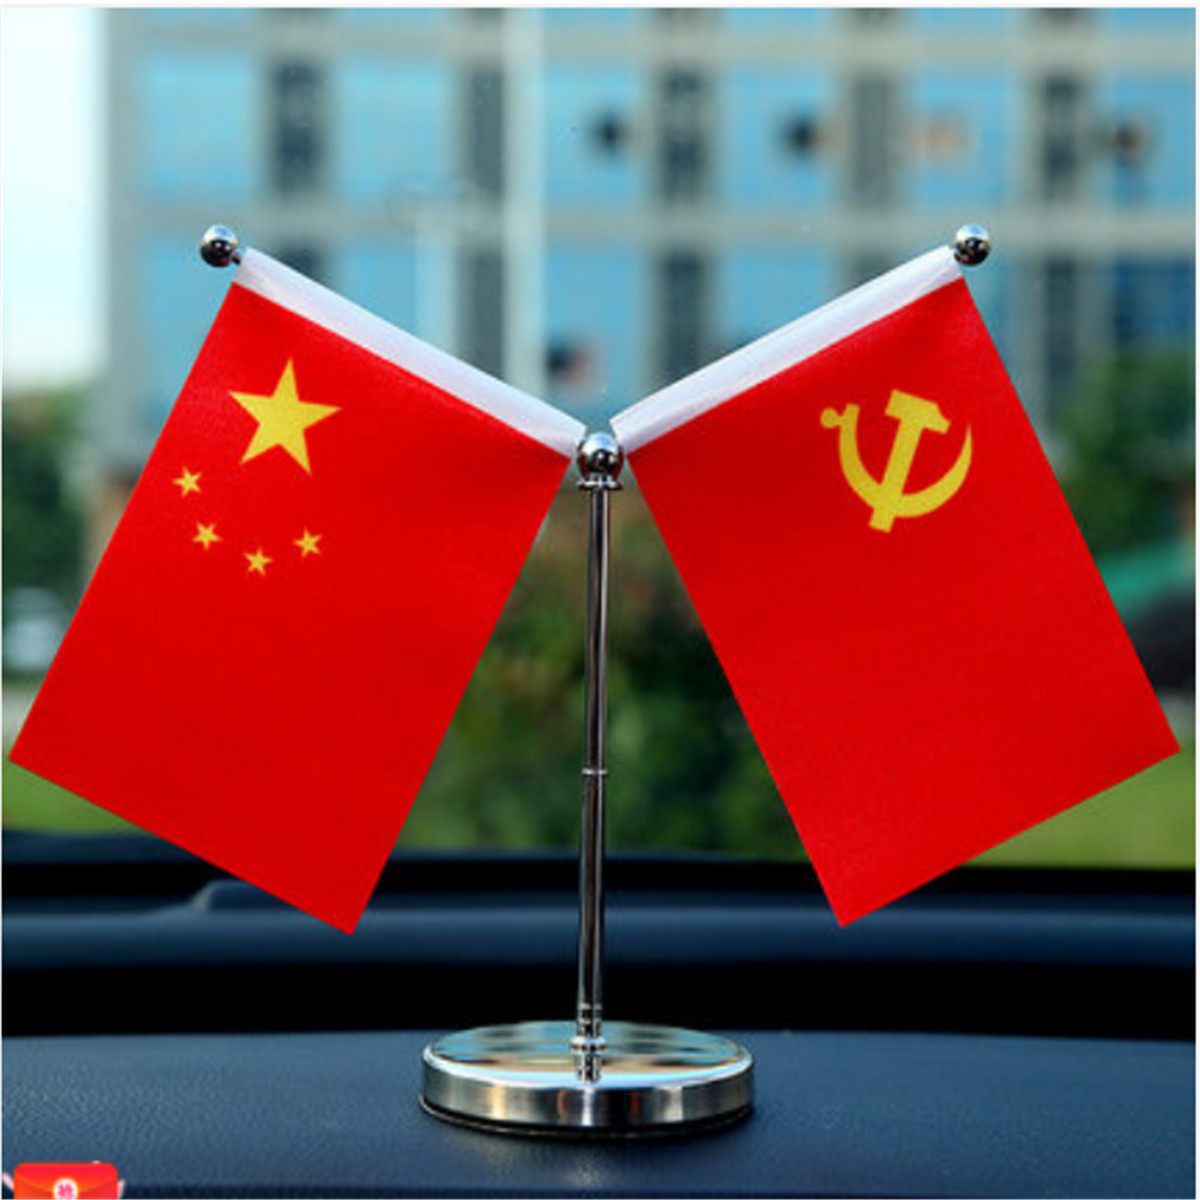 旗高档中国旗党旗汽车摆件装饰价格质量 哪个牌子比较